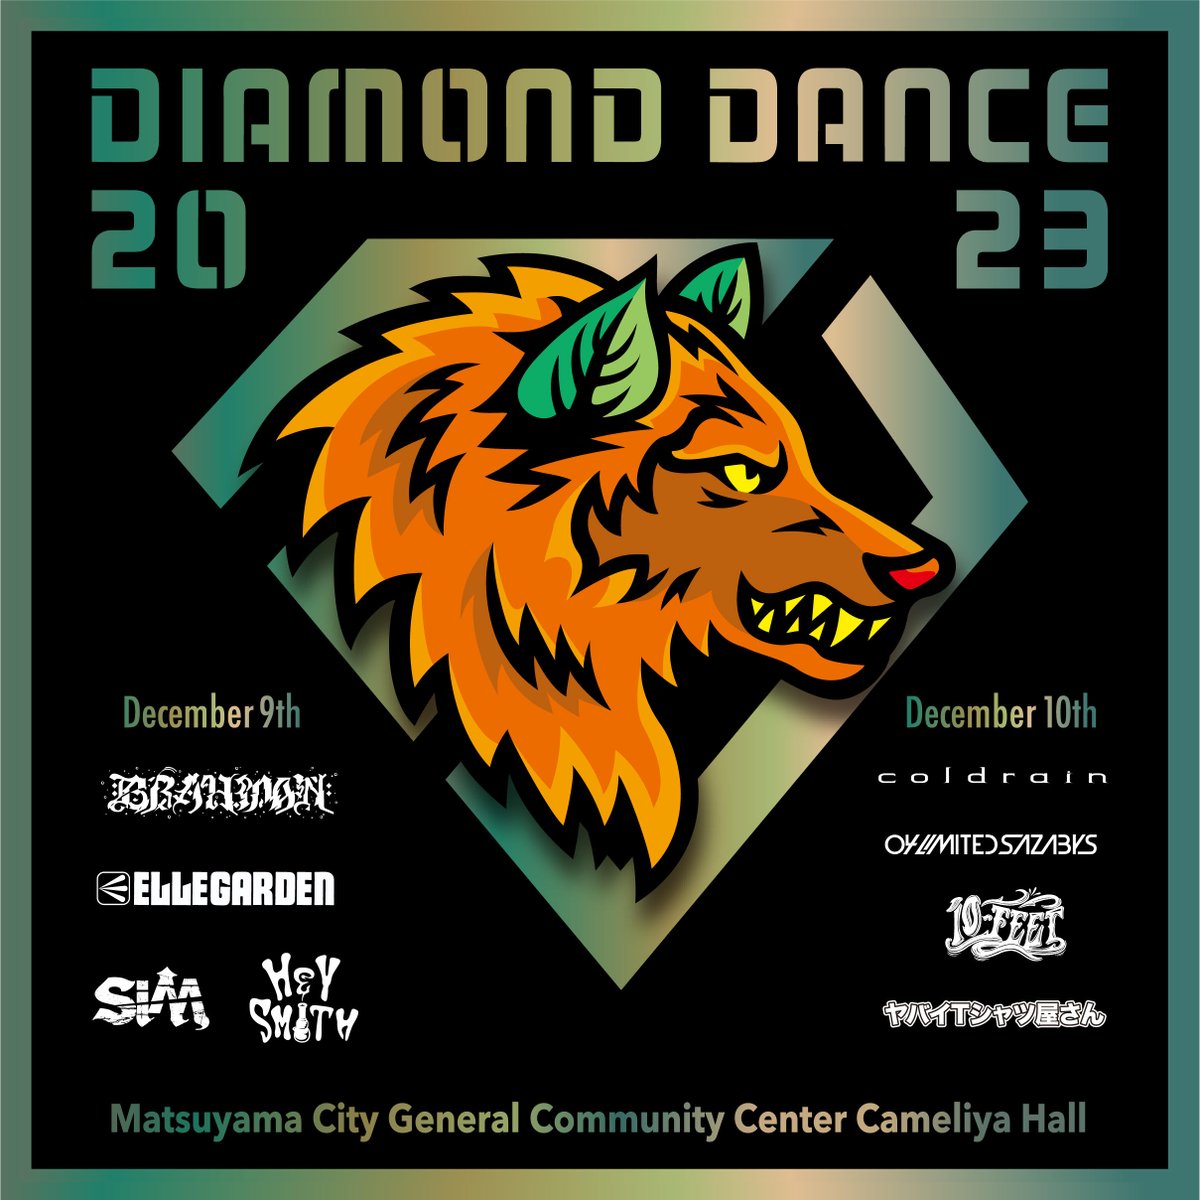 【愛媛】DIAMOND DANCE 2023 (松山市総合コミュニティセンター)